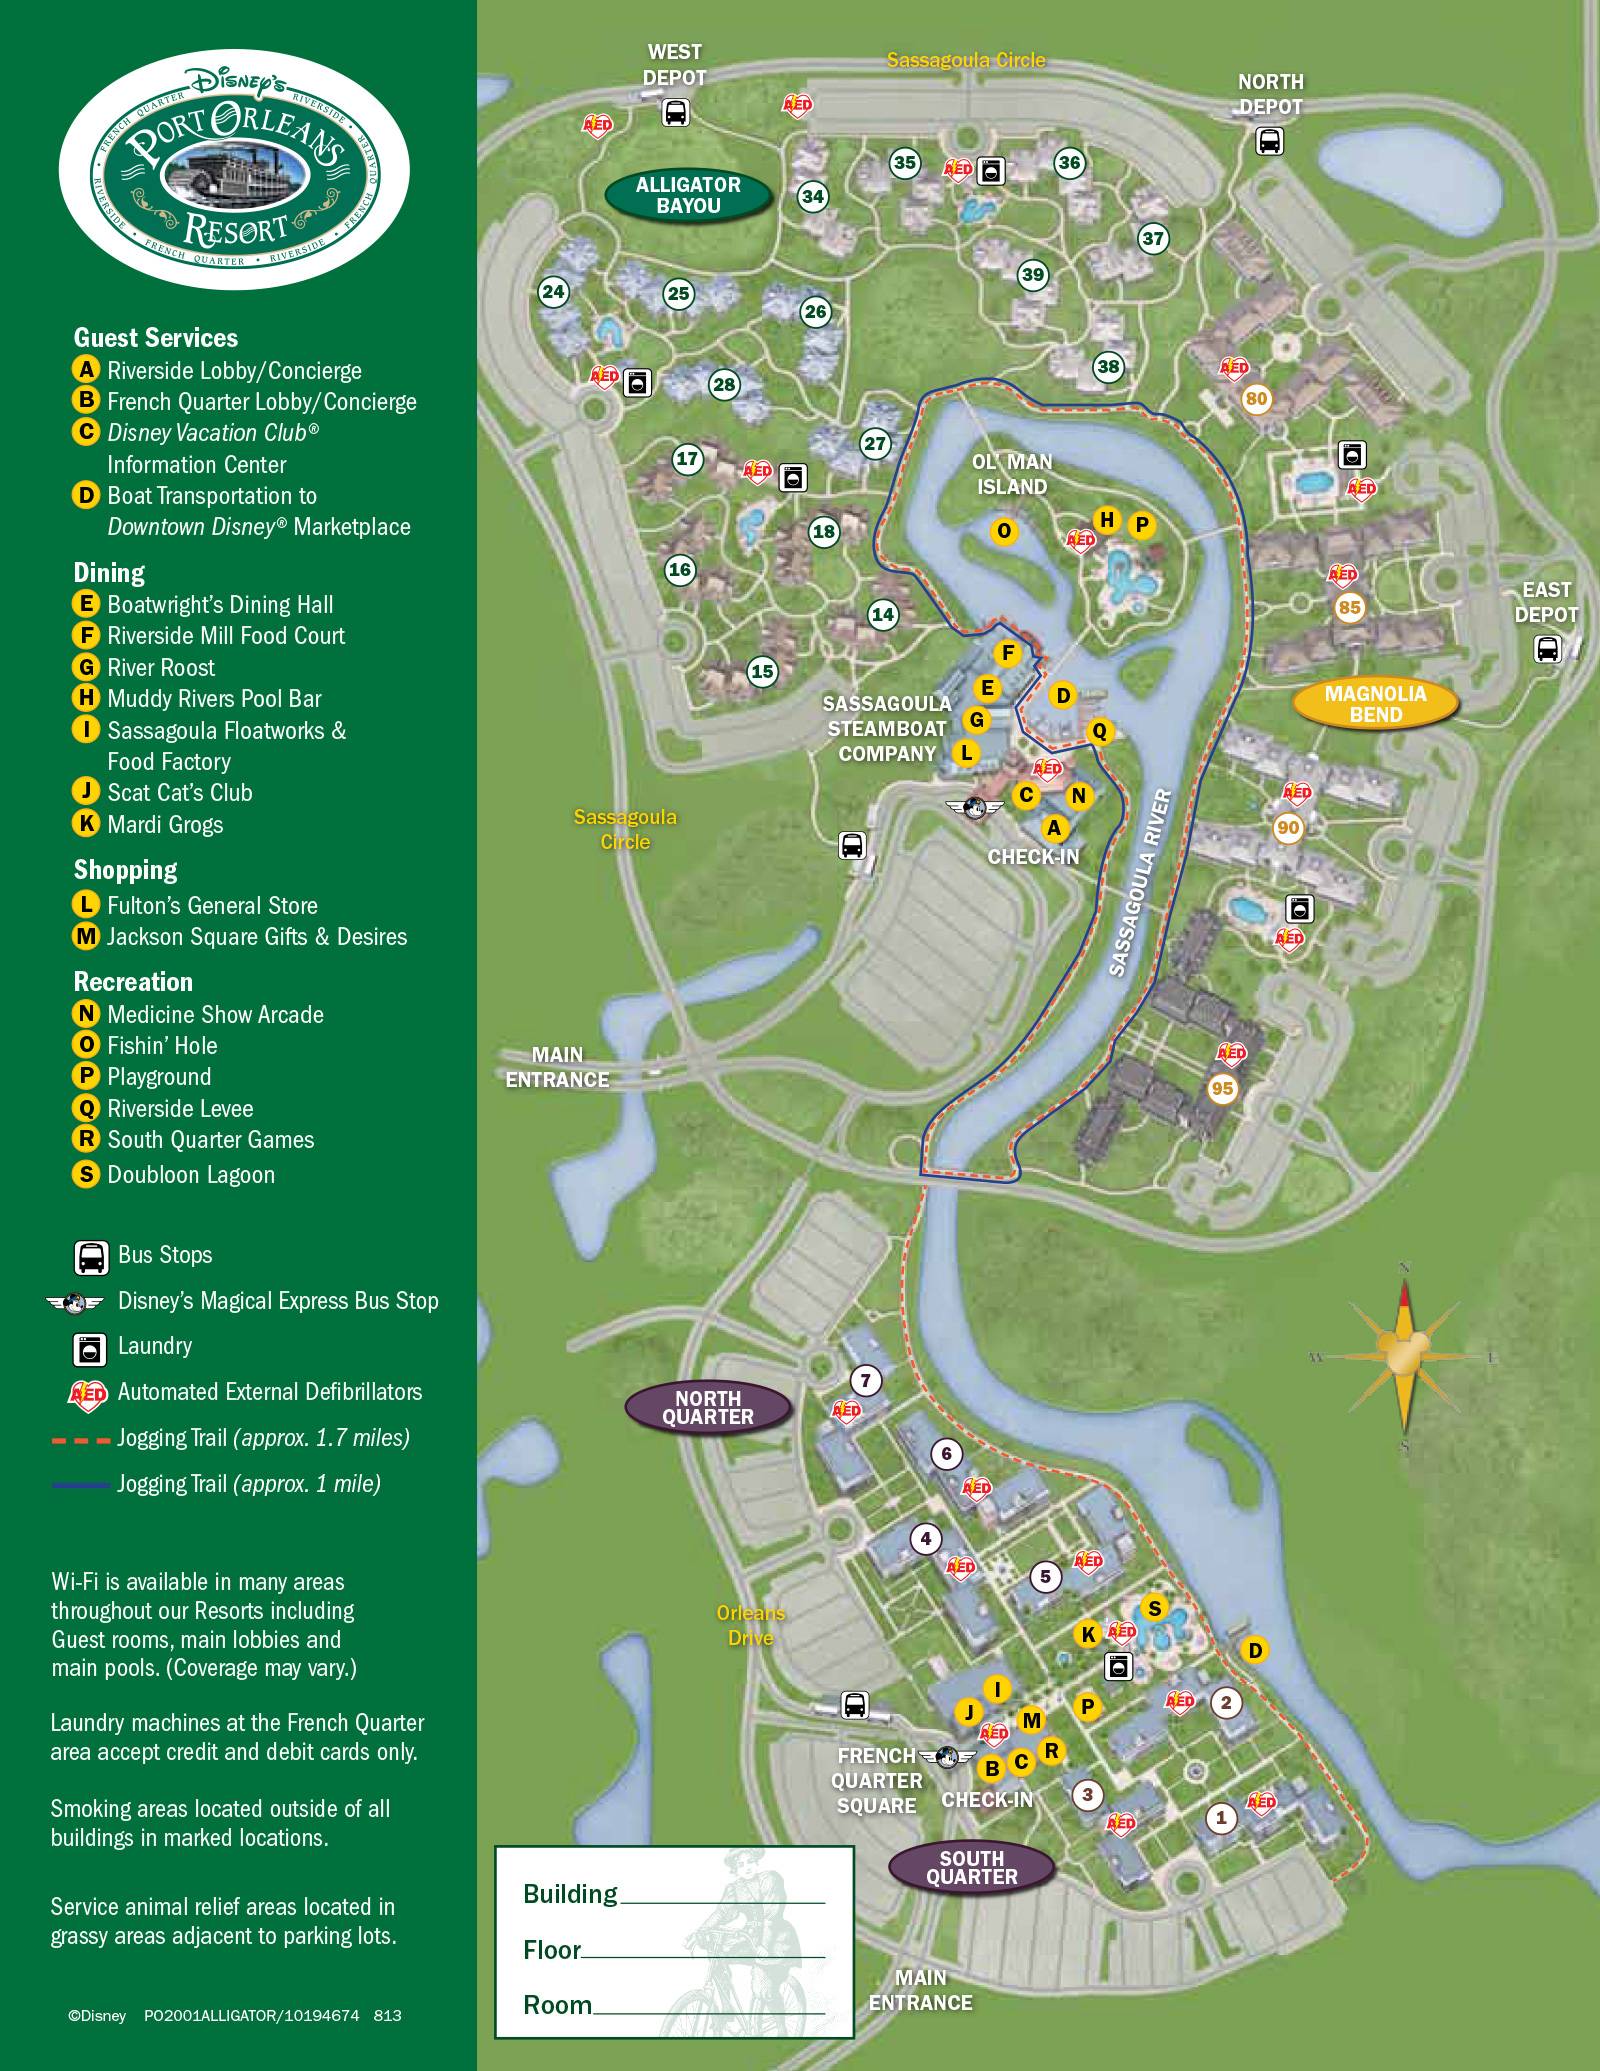 New 2013 Port Orleans Resort map - Alligator Bayou